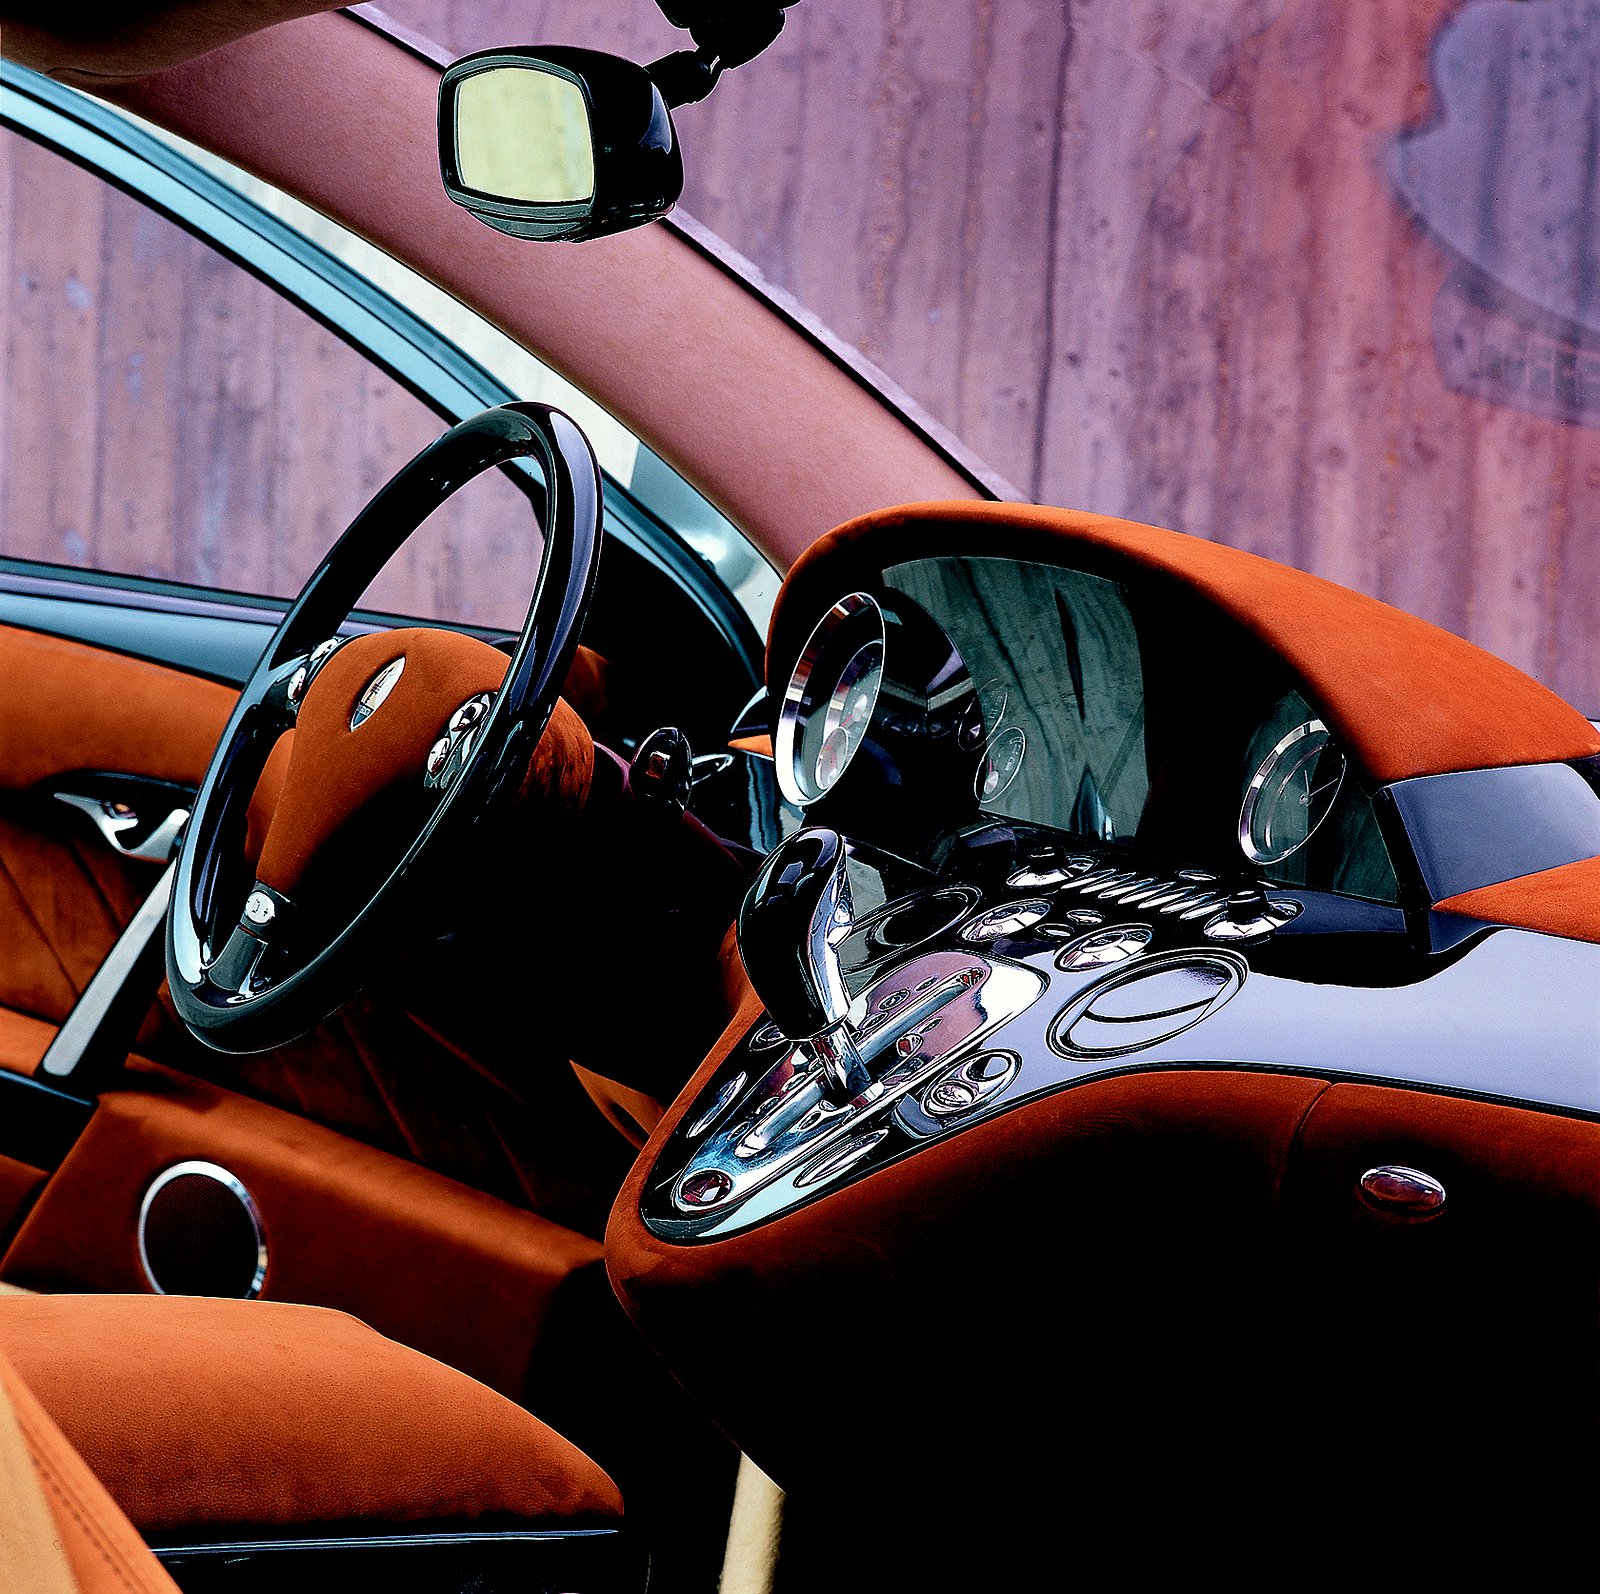 Maserati Buran (ItalDesign), 2000 - Interior